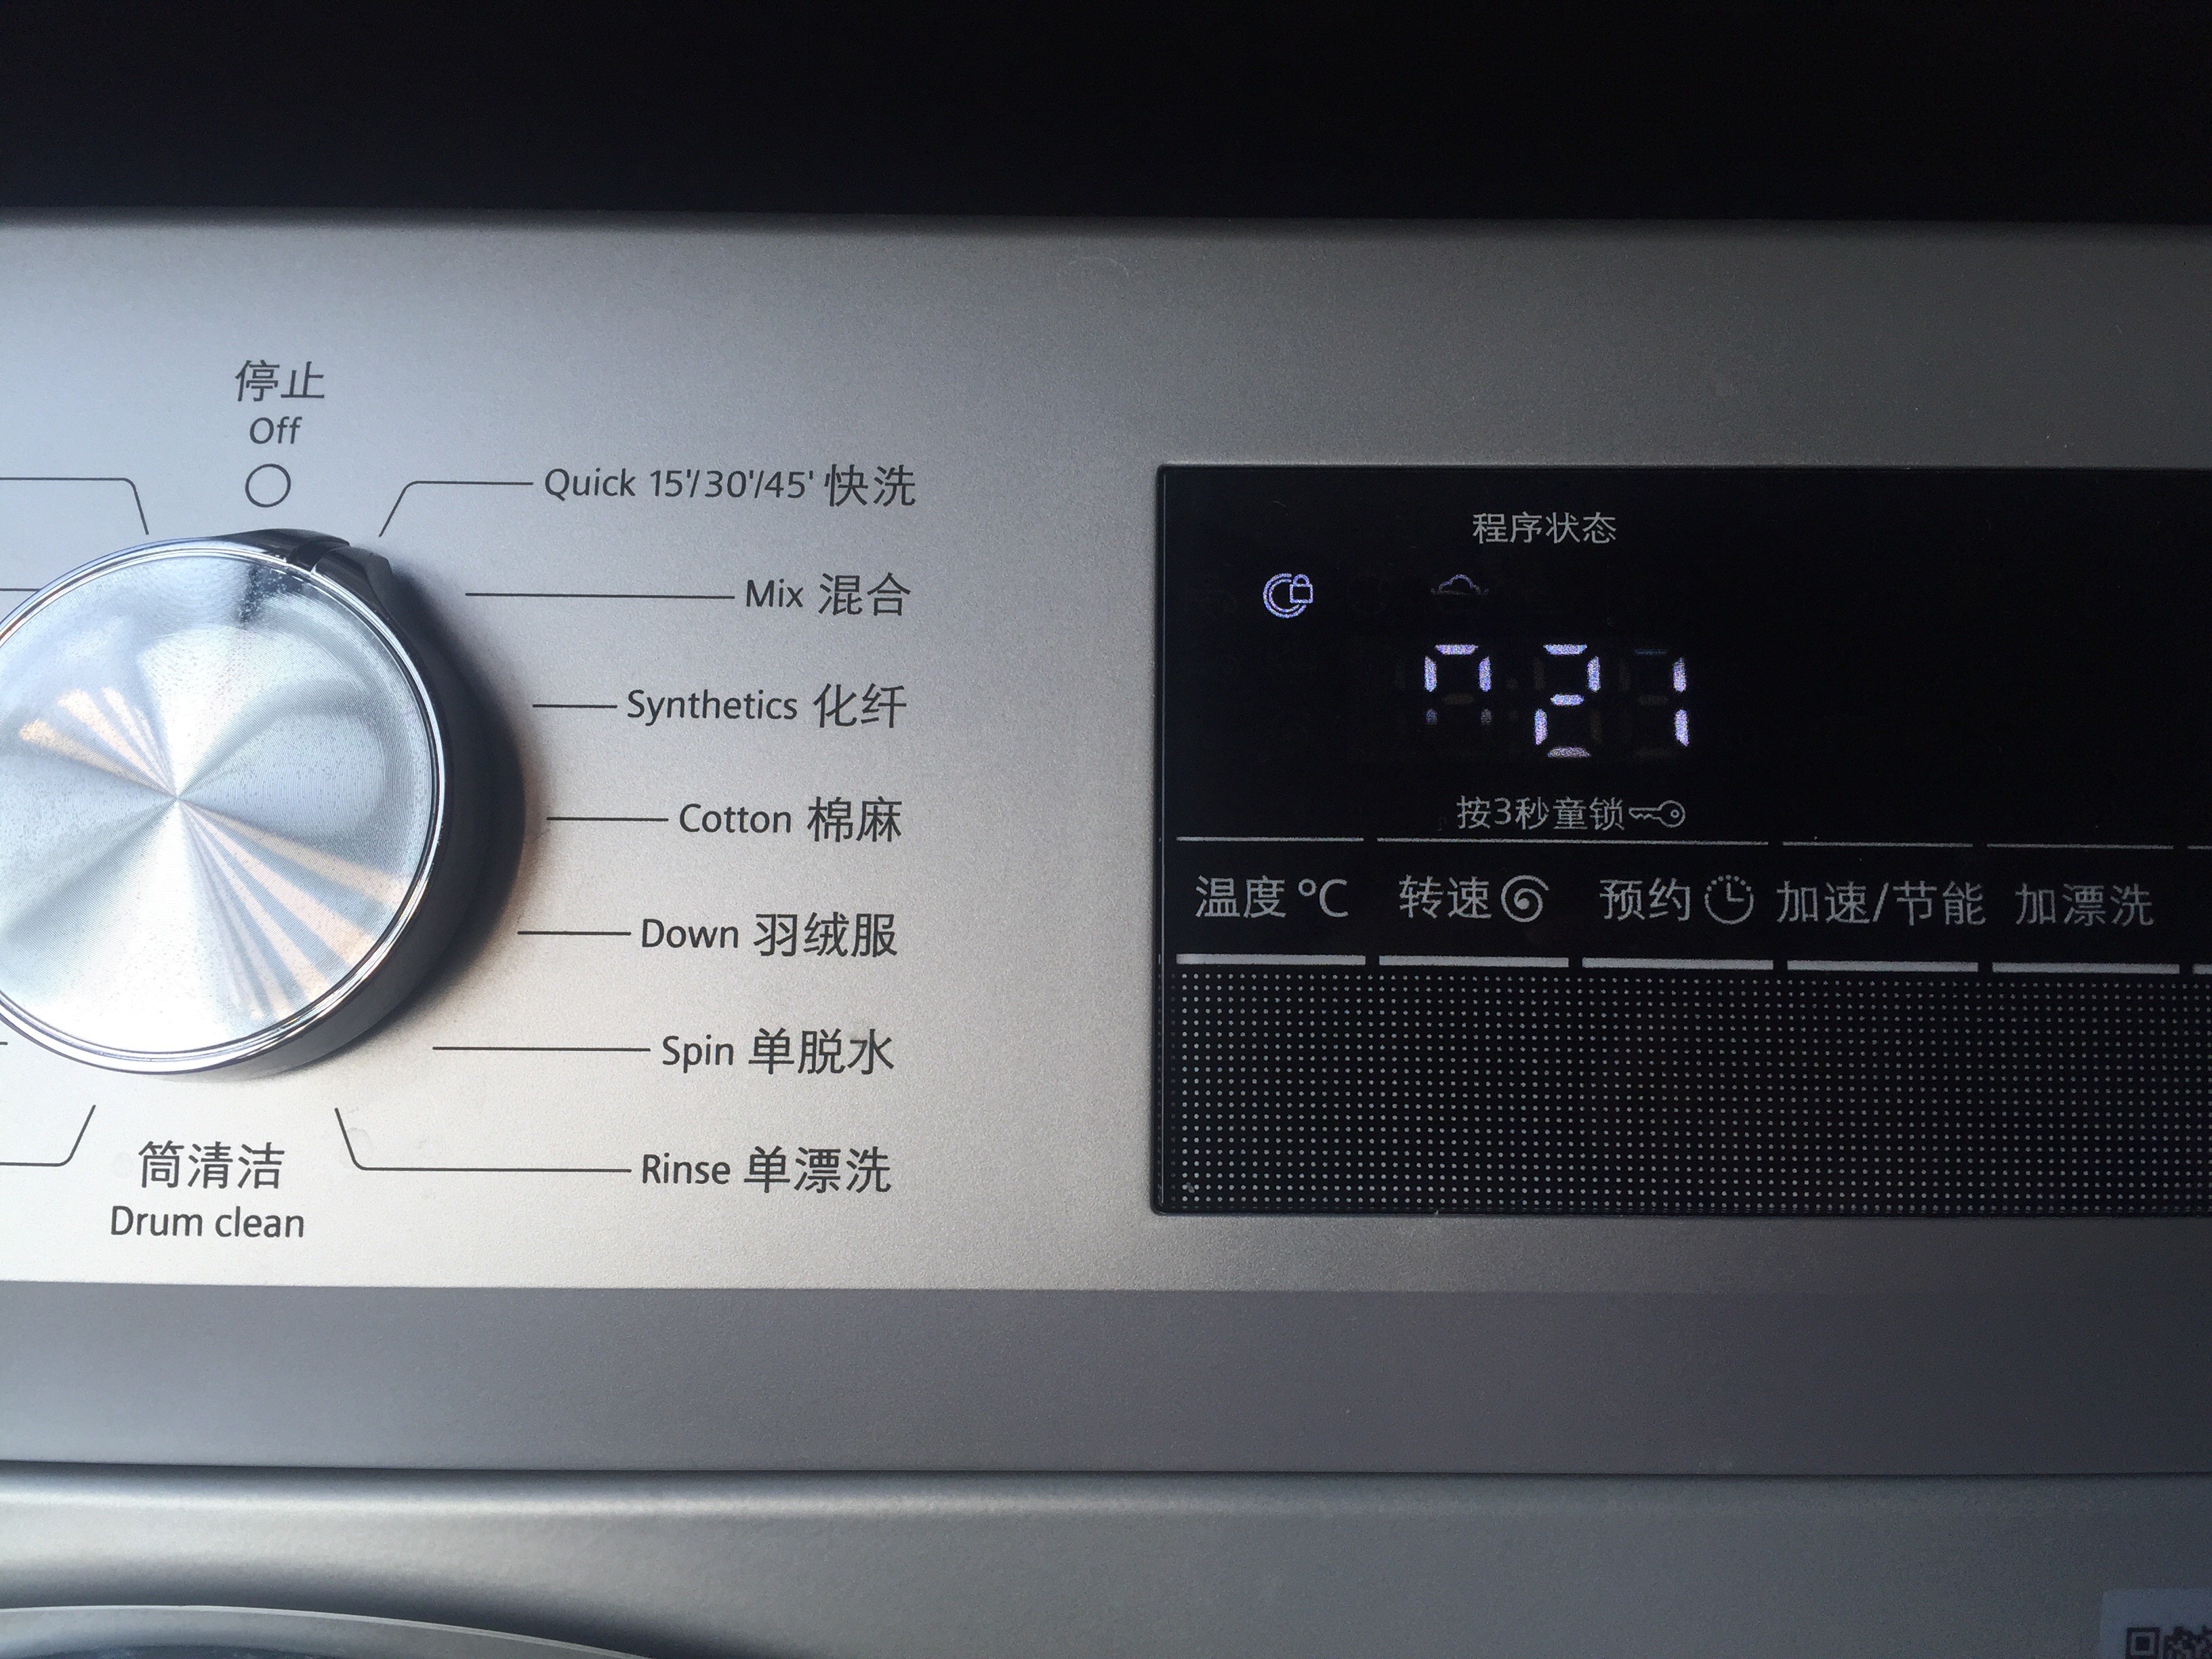 西门子滚筒洗衣机快洗开关,分:15,30,45,三个时间段,请问每次一打开